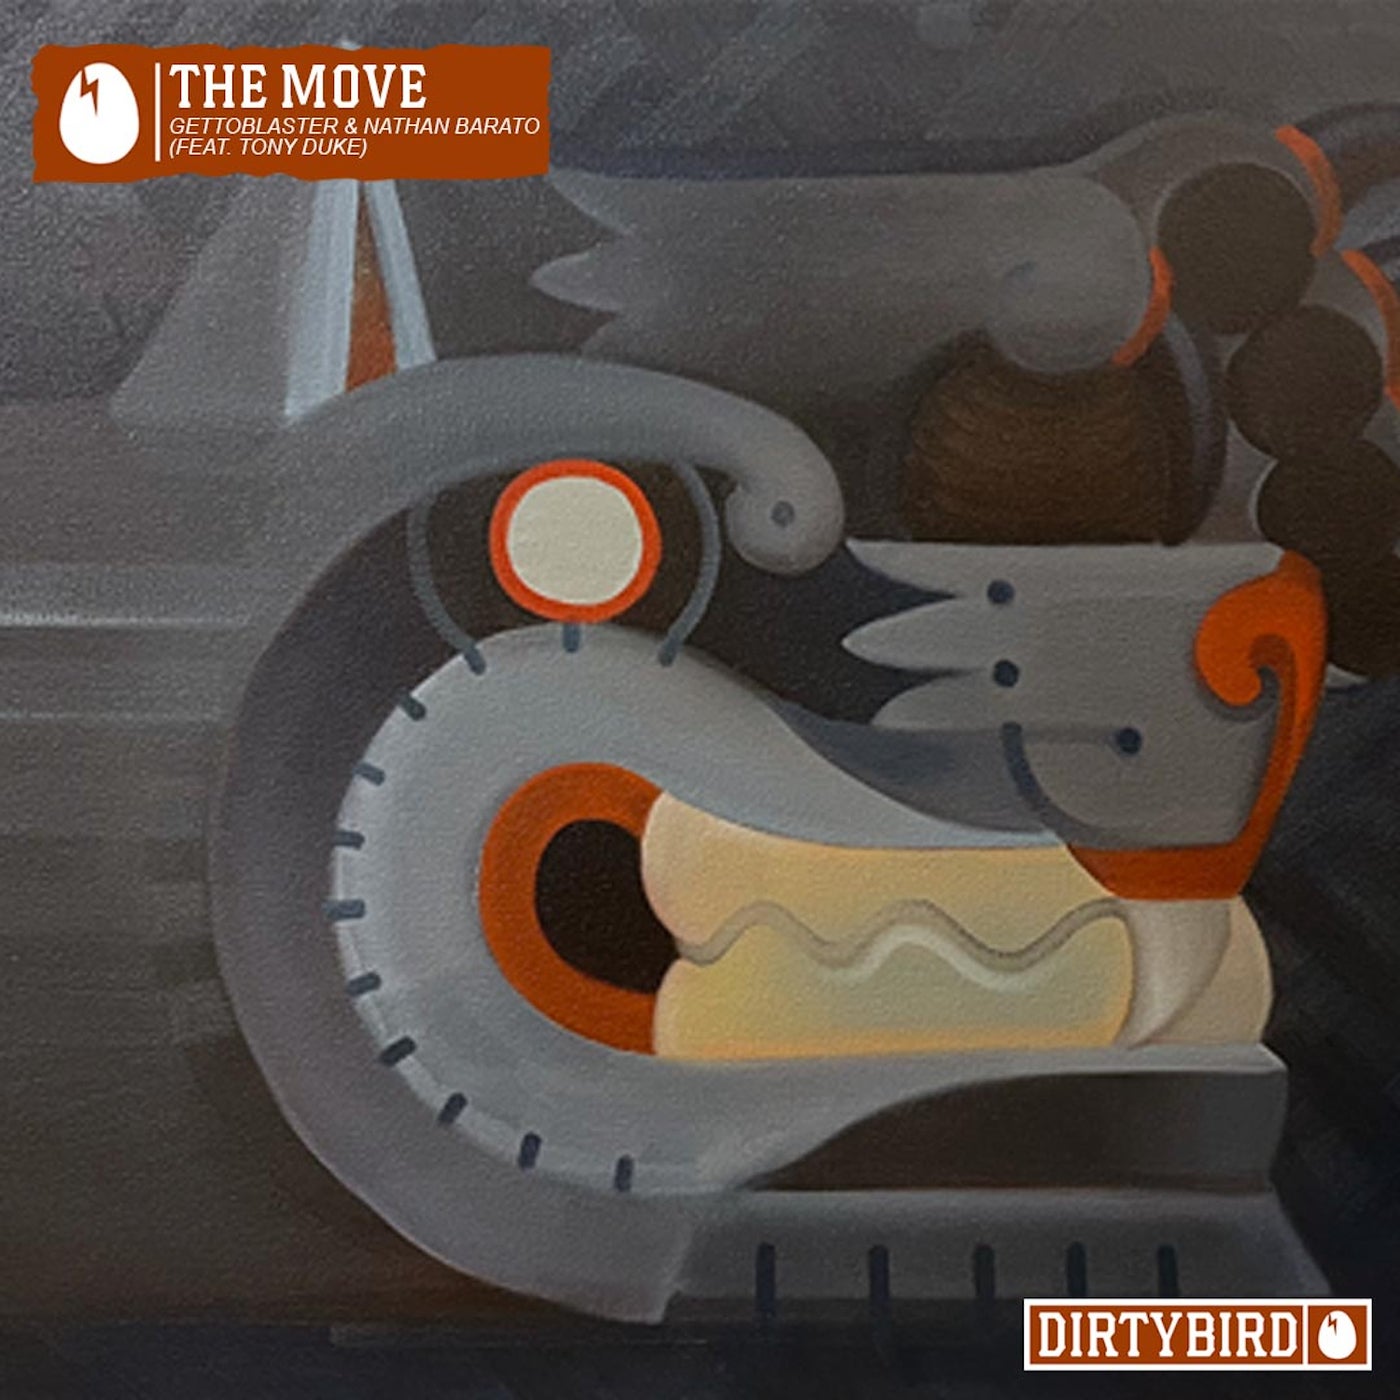 The Move (feat. Tony Duke)